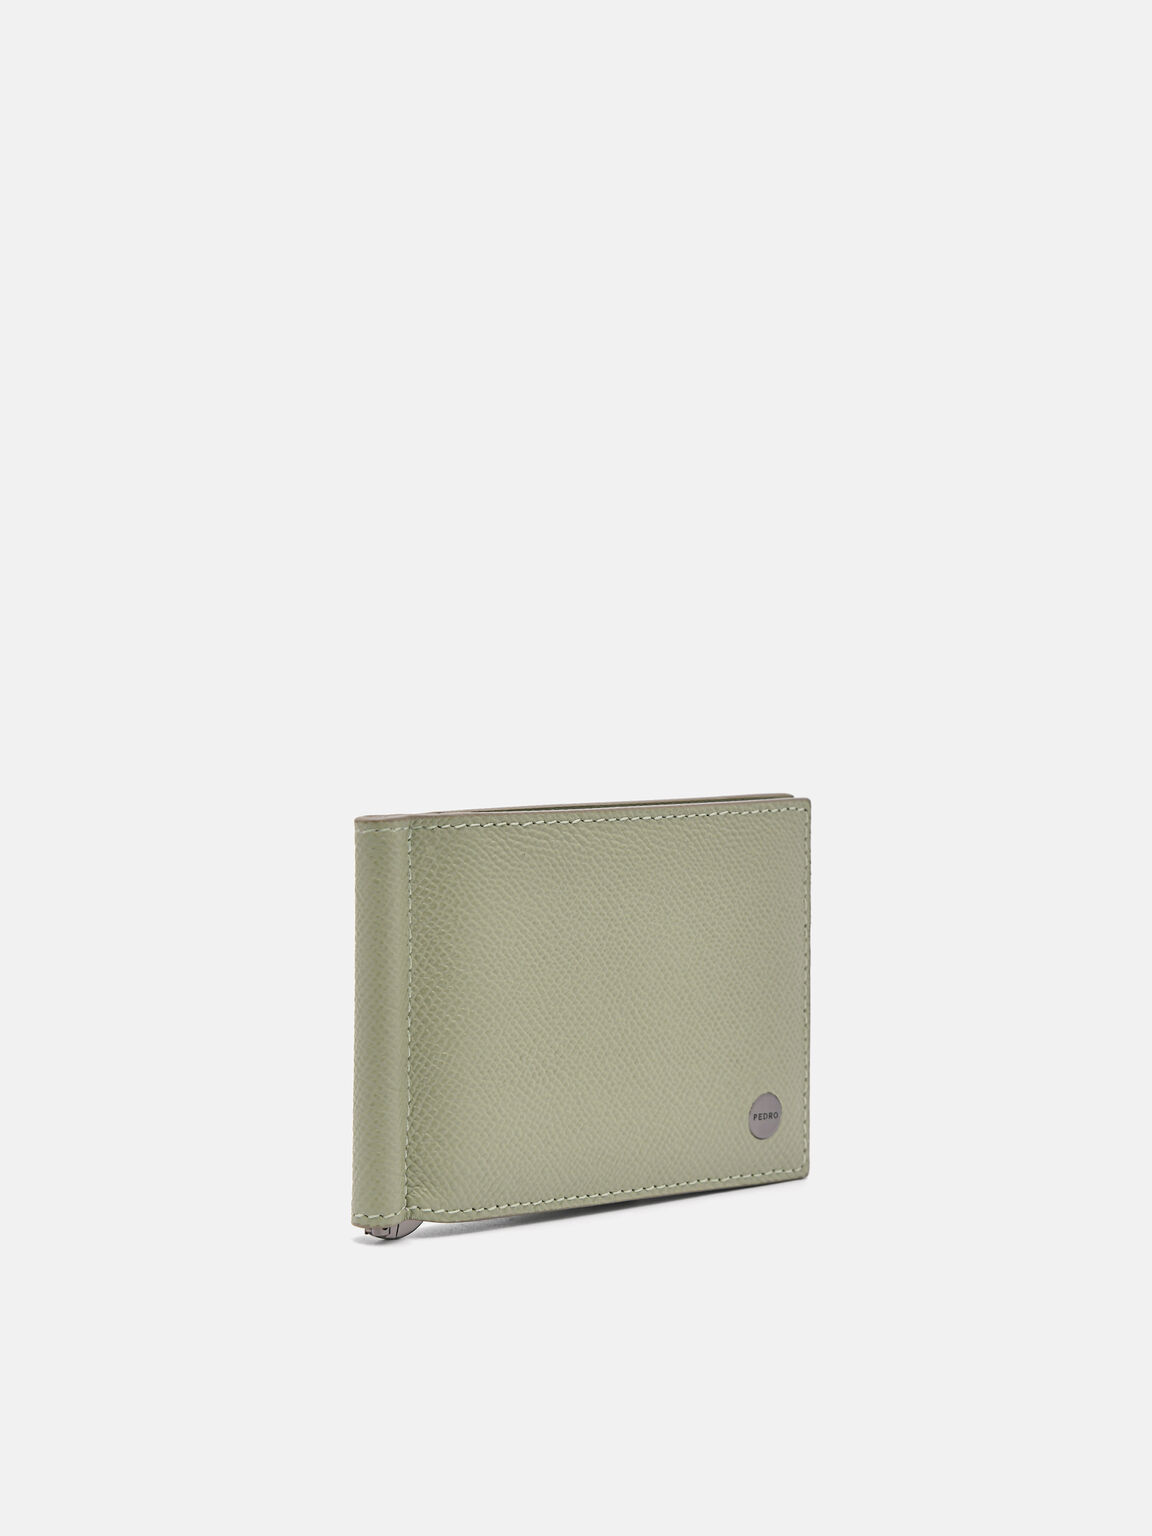 Oliver Leather Bi-Fold Card Holder with Money Clip, Olive, hi-res